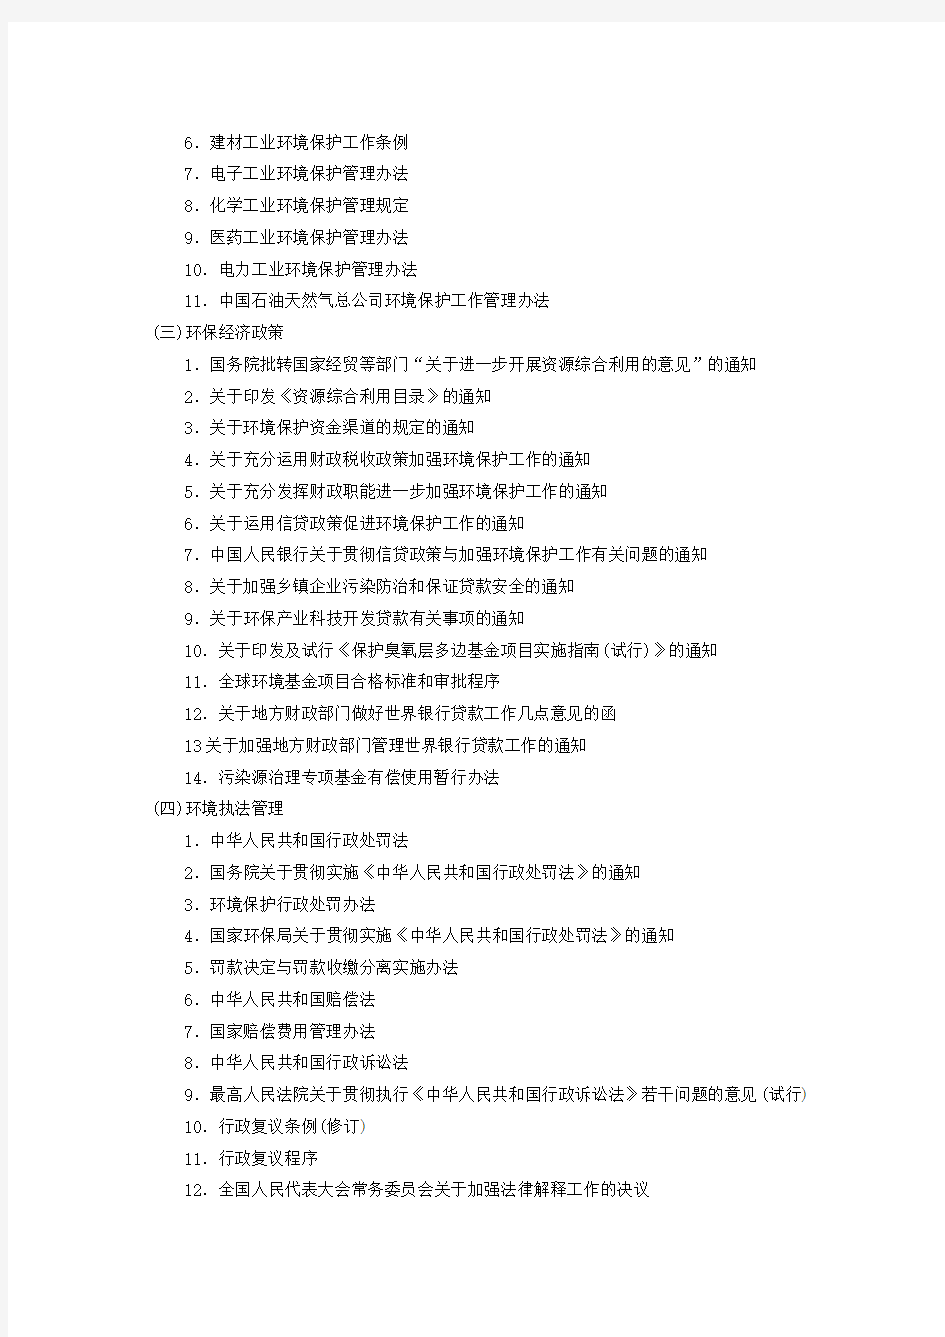 中国主要环境法律法规清单